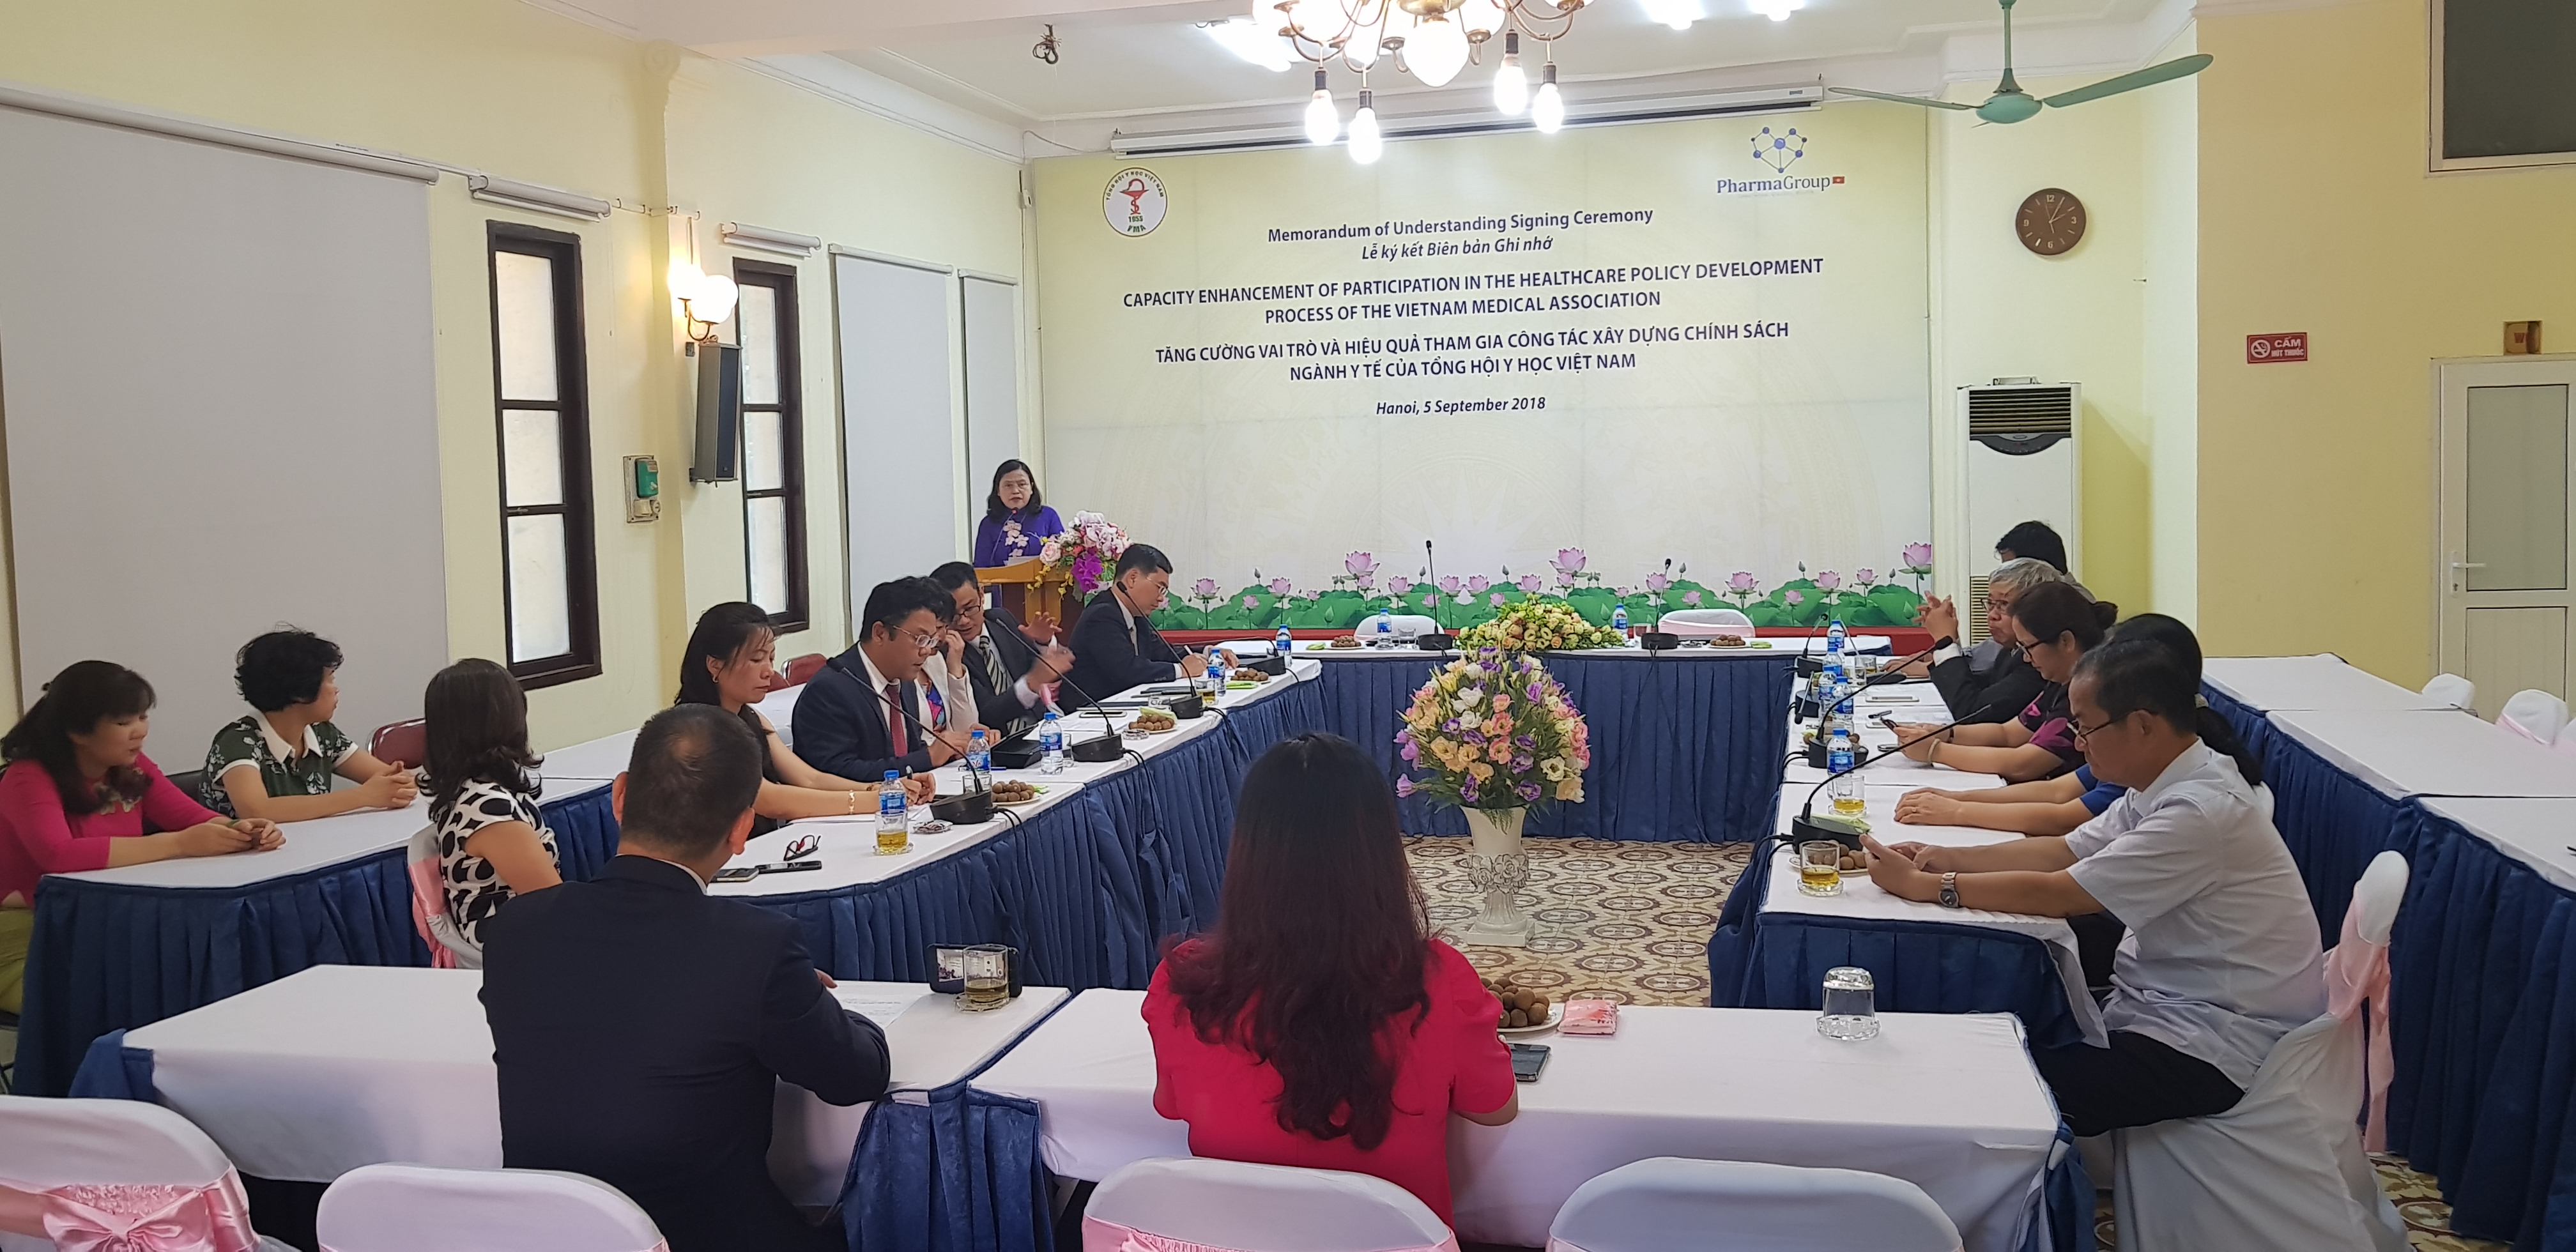 PGS.TS. Nguyễn Thị Xuyên, Chủ tịch Tổng hội Y học Việt Nam phát biểu tại buổi Lễ ký kết  